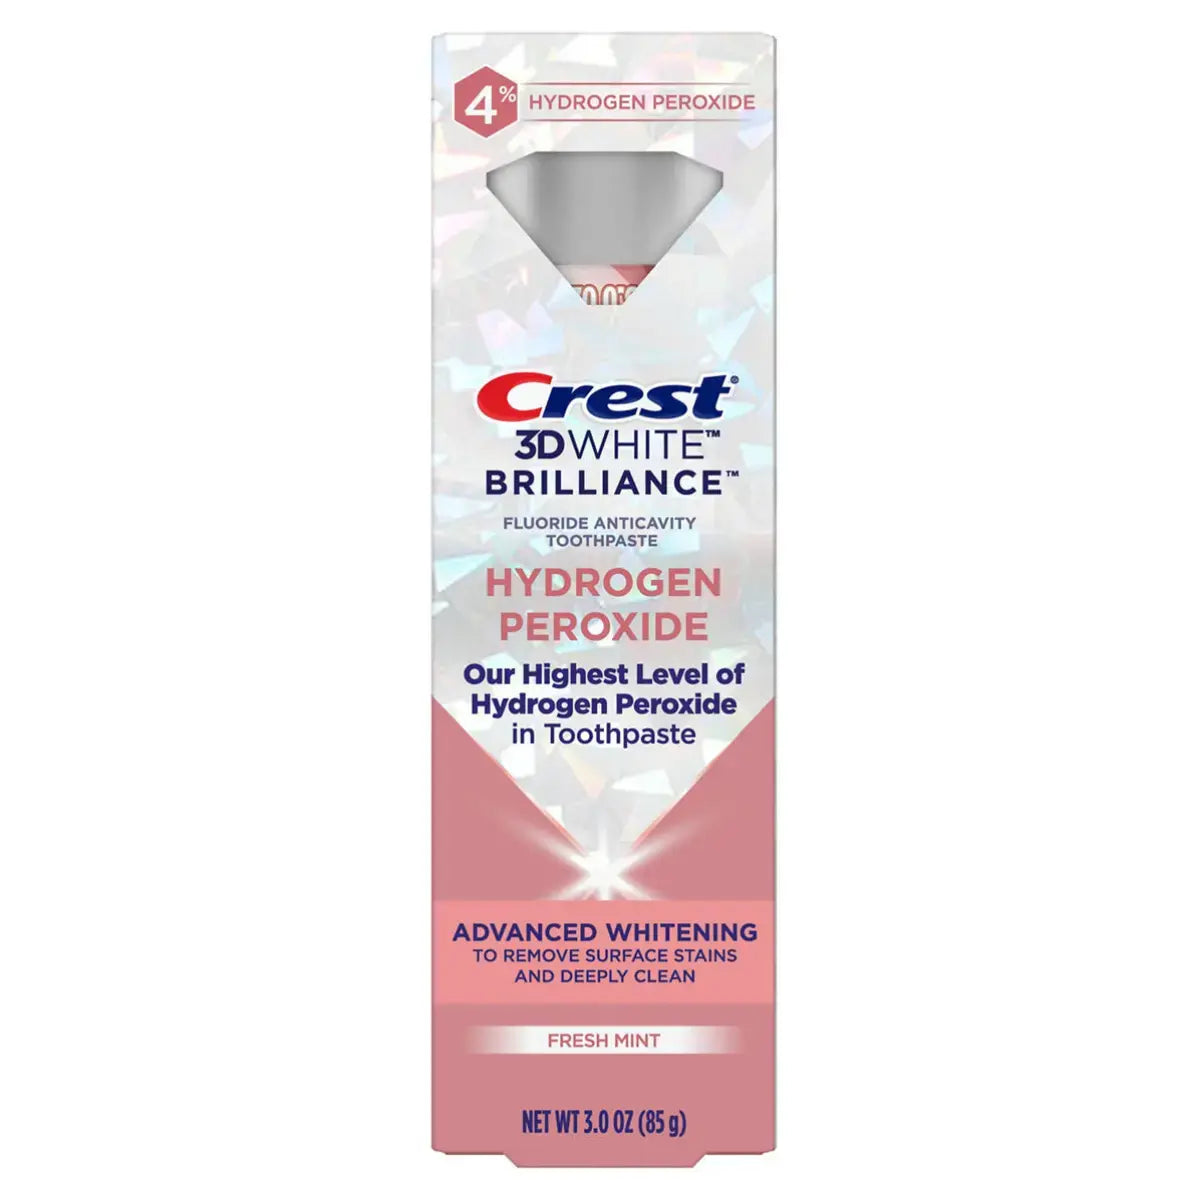 Tandpasten Crest 3D White Brilliance 4% Hydrogen Peroxide Fresh Mint 85g